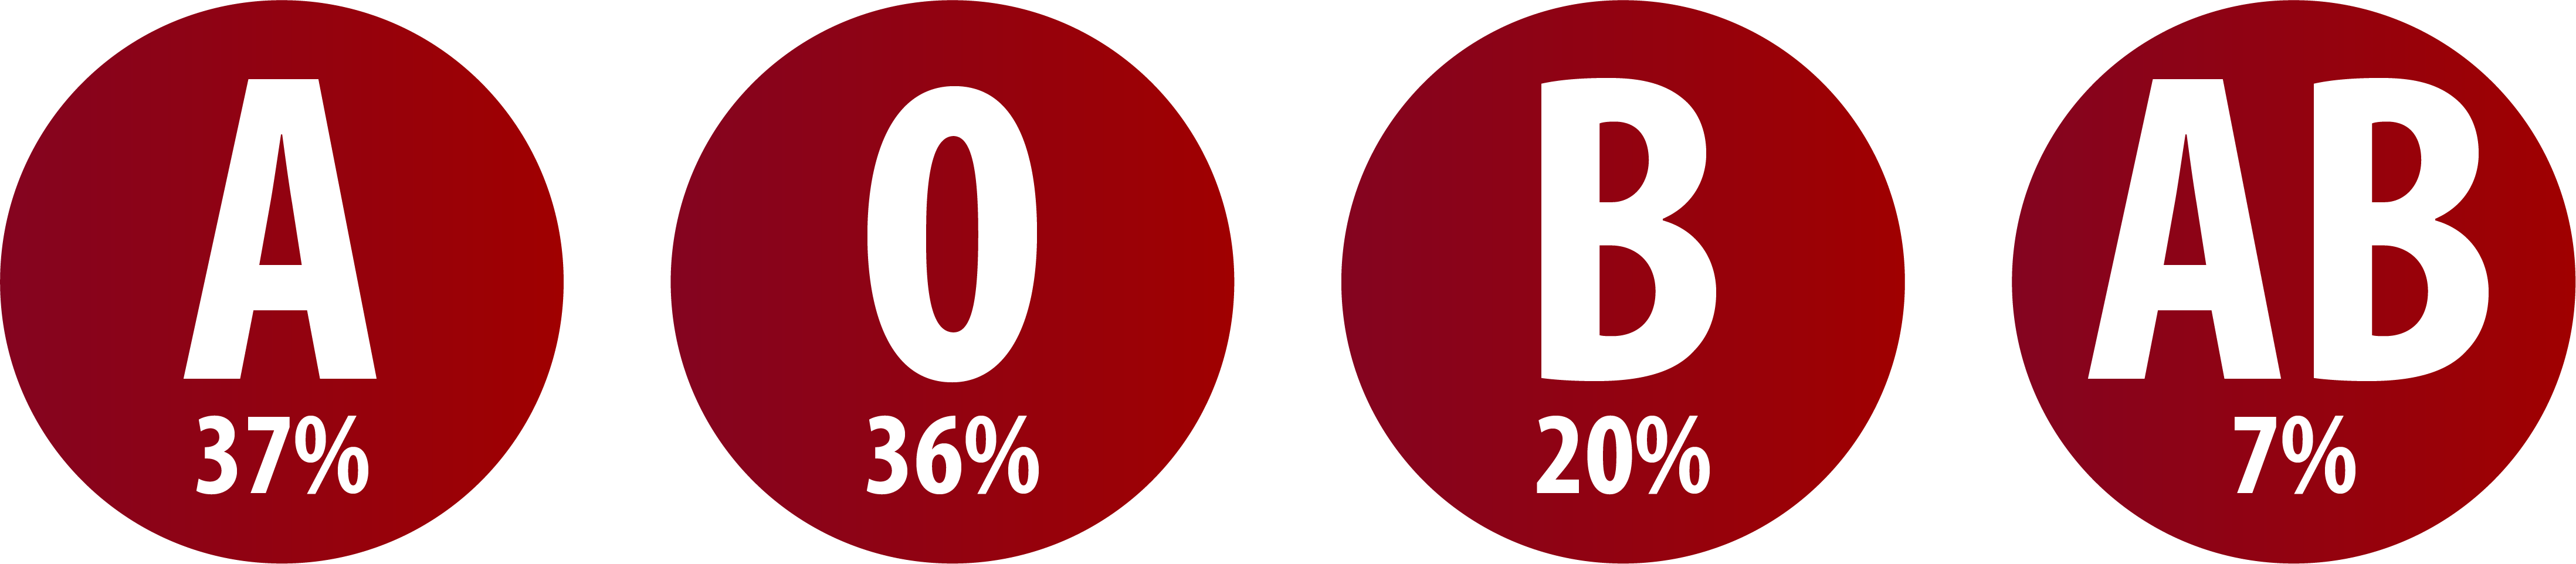 Latvijas populācijas asins grupu sadalījums